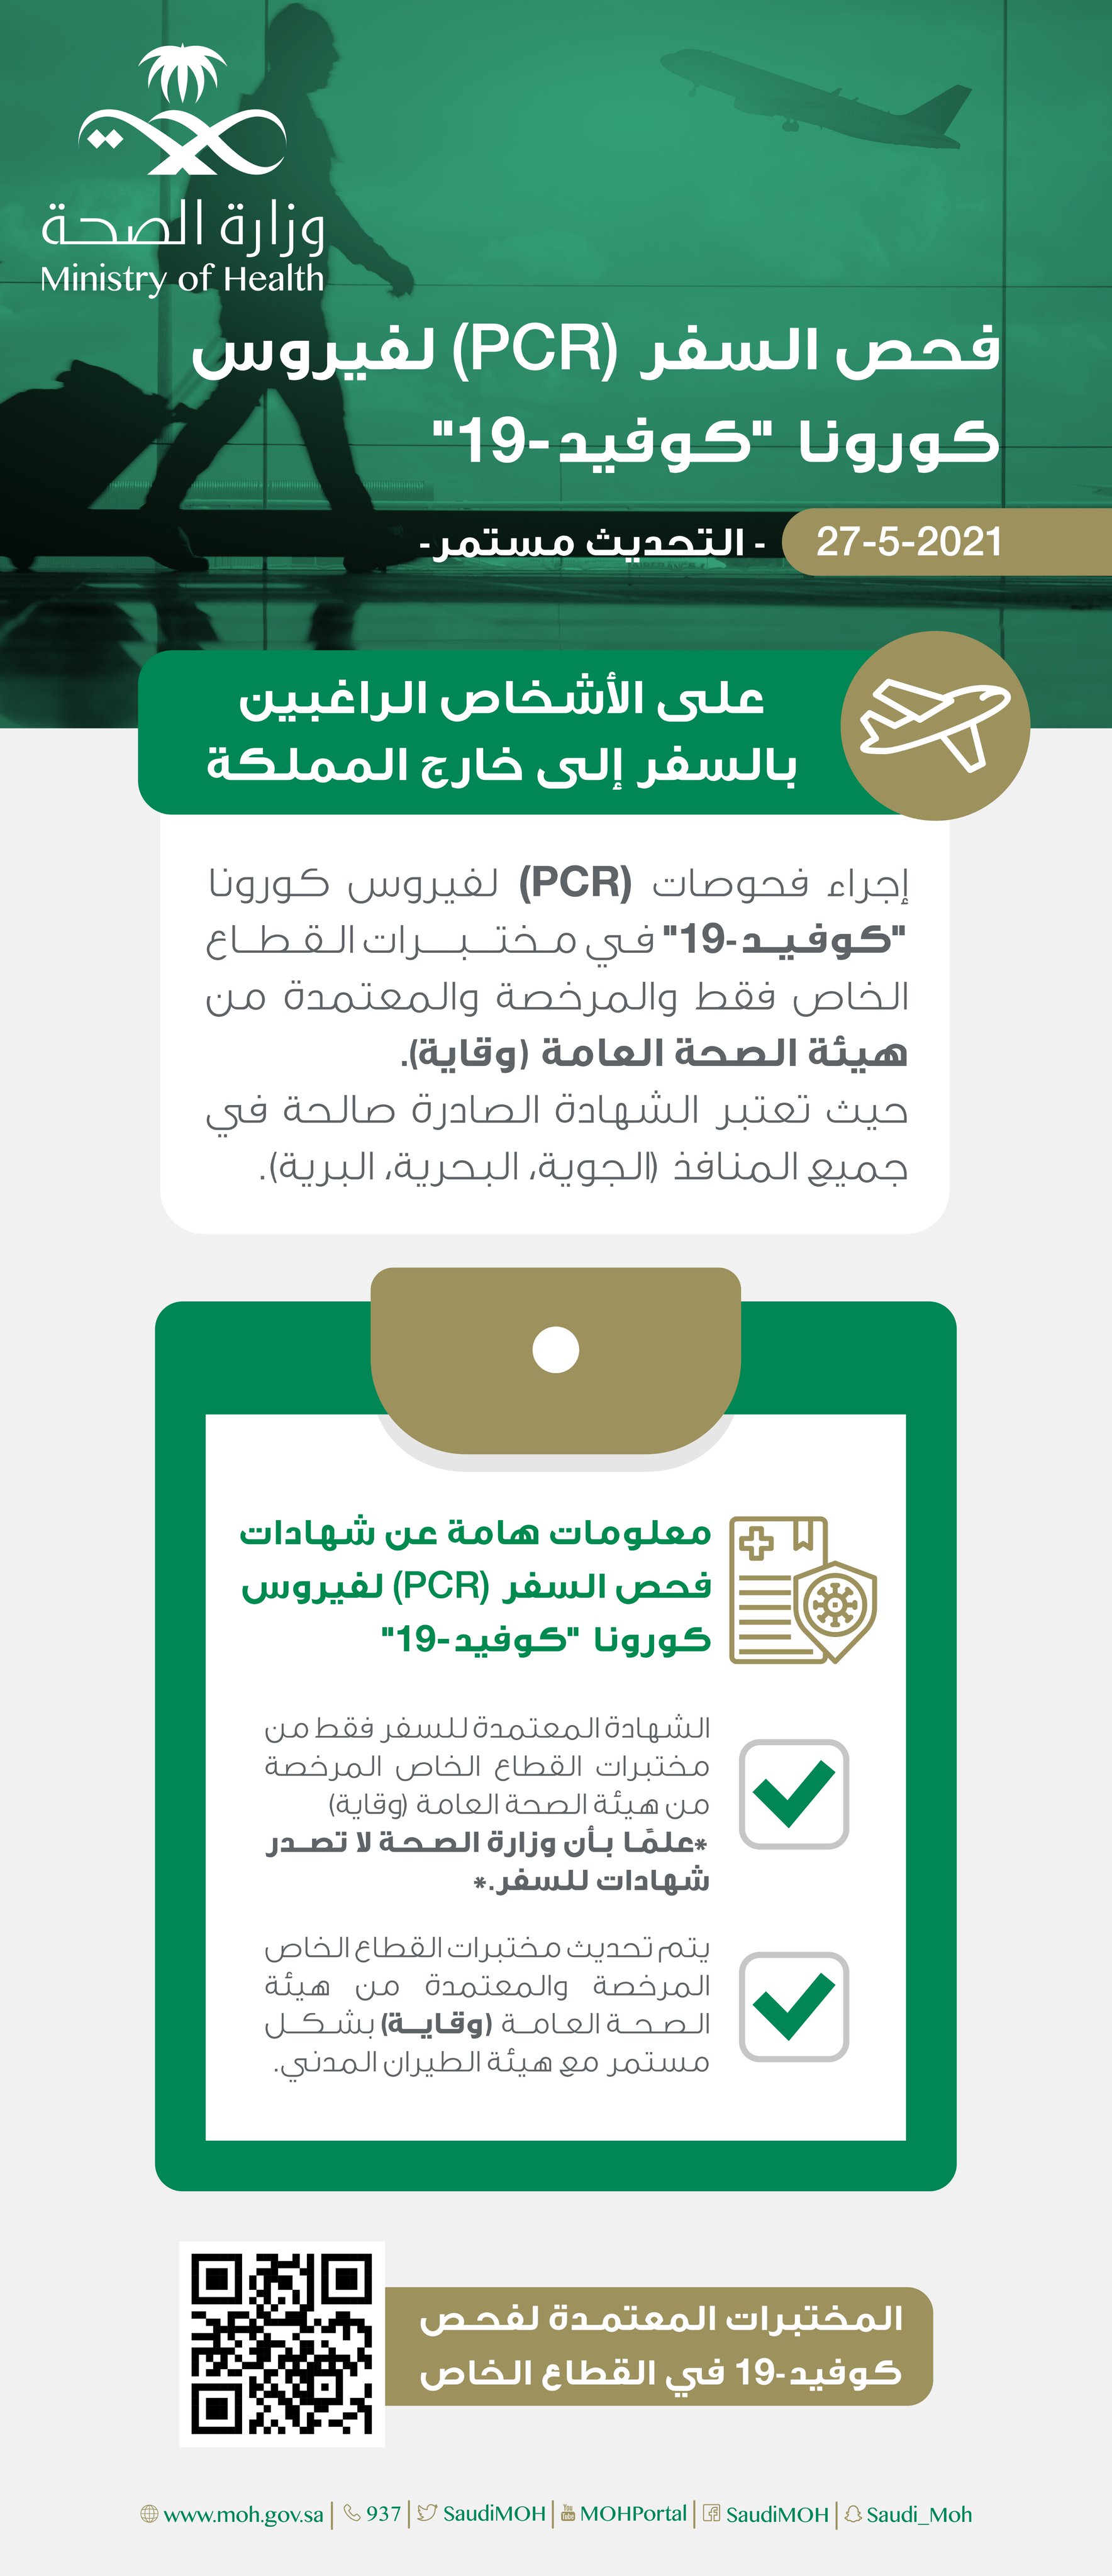 وزارة السعودية موارد الصحة تسجيل الدخول